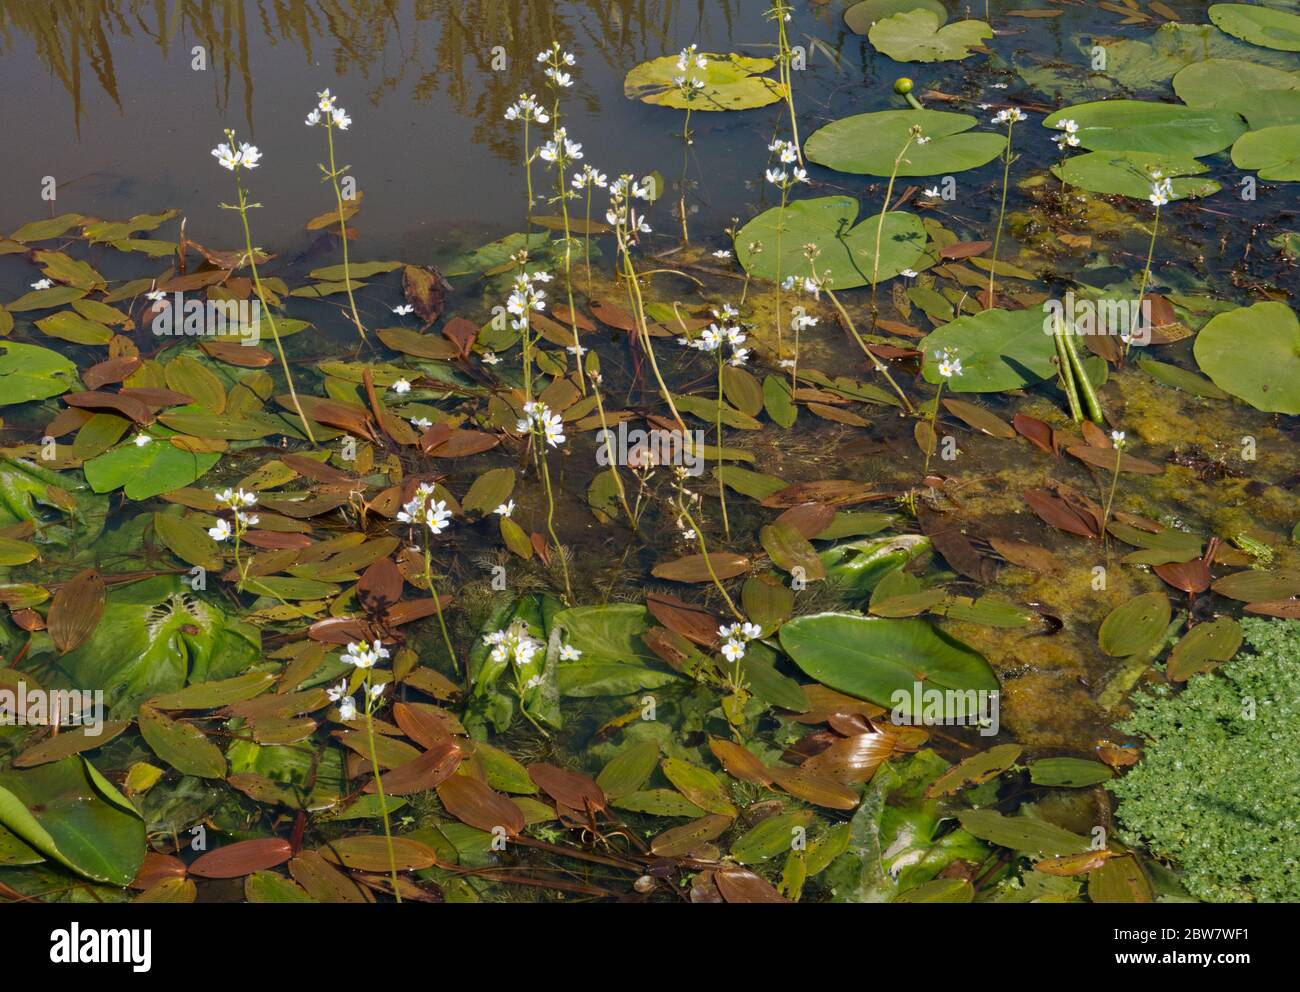 Flores blancas de agua violeta, hojas flotantes de la hierba de hoja ancha, la mala hierba común y el lirio de agua amarillo en un río Foto de stock